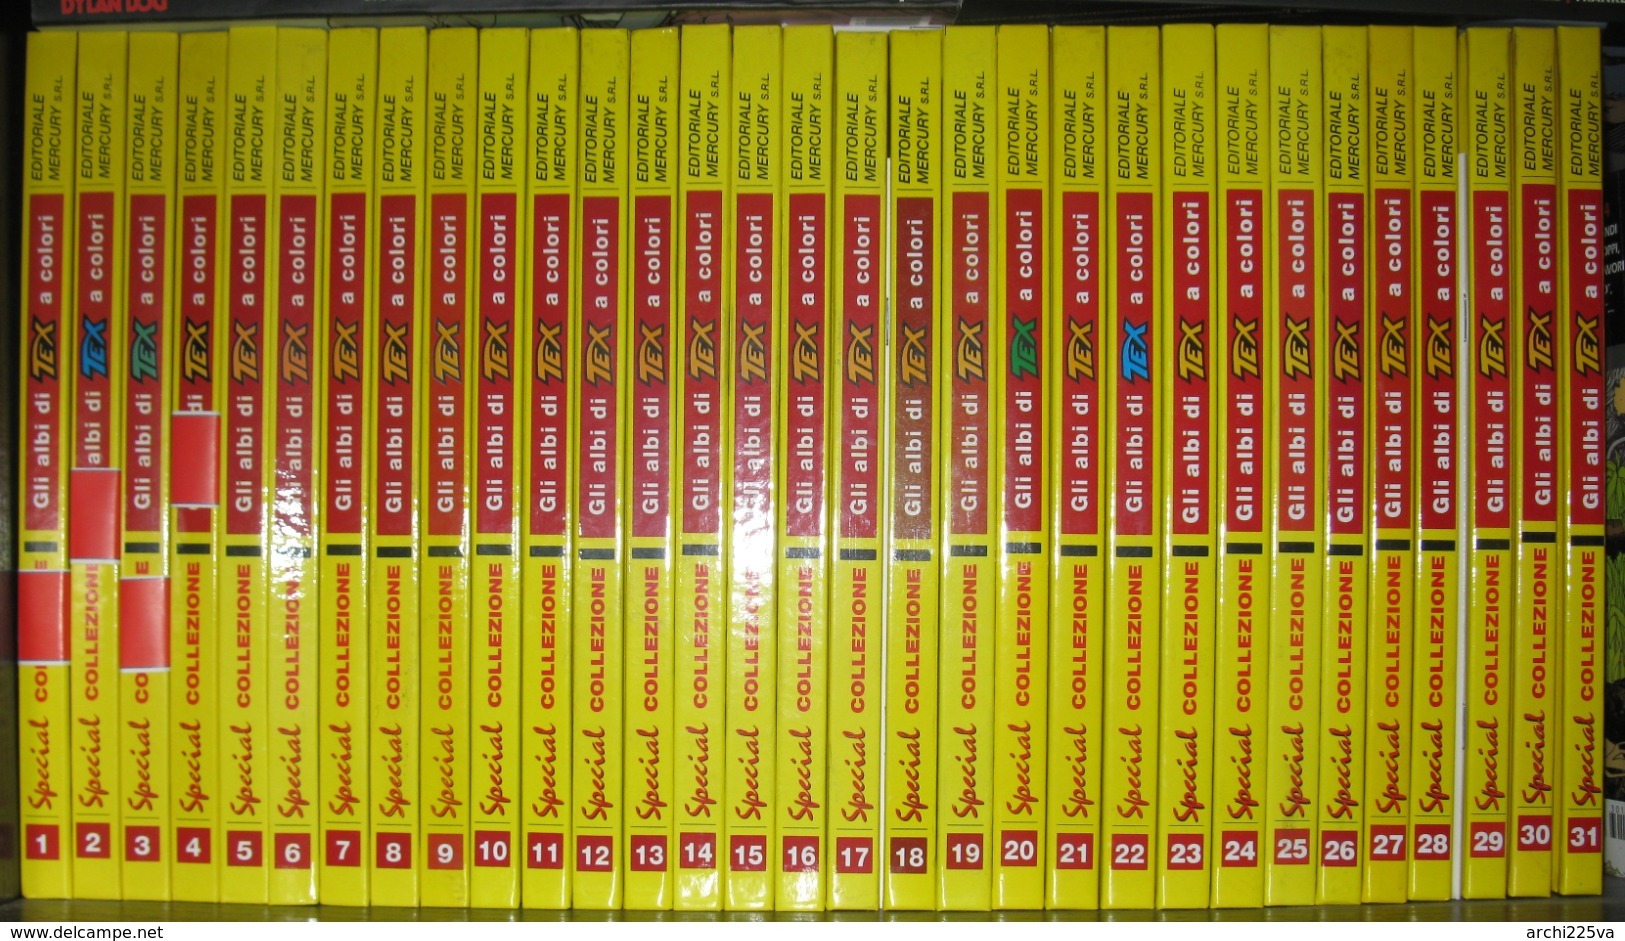 Collezione Special Tex A Colori 1997 / 2009 - Mercury - Edizione Limitata Numerata - Originali N. 1 / 31 Al Facciale - Tex